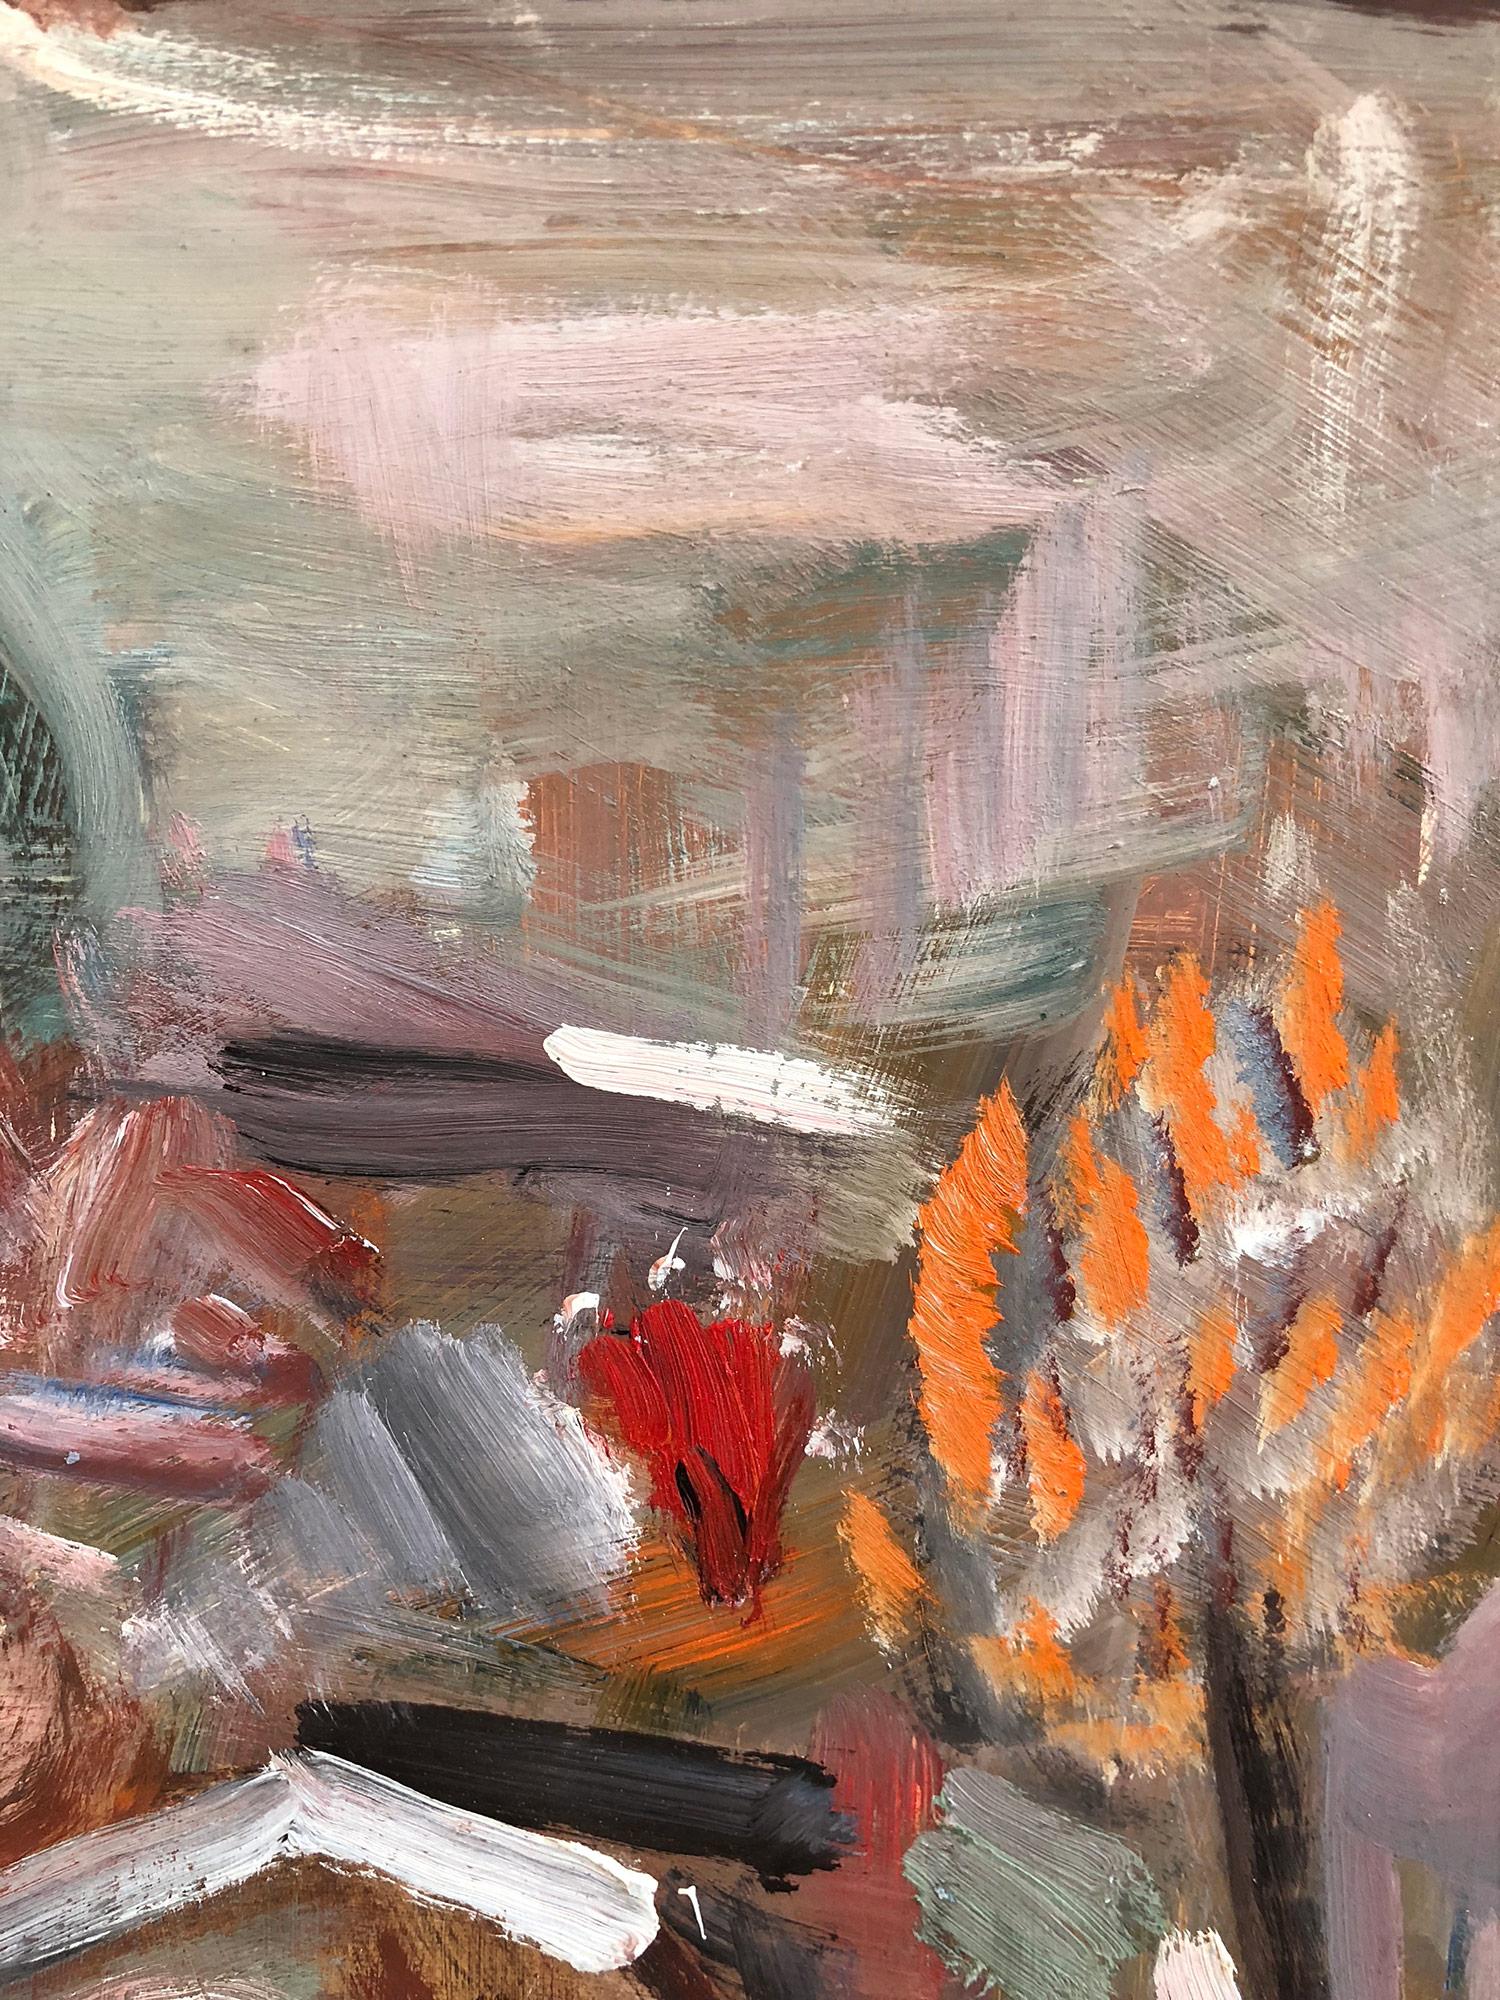 Une peinture à l'huile d'un modernisme puissant, réalisée en 1969 par le peintre russe Michael Baxte. Principalement connue pour ses figures abstraites sur toile ou ses scènes de rue, cette pièce est une merveilleuse représentation de ses